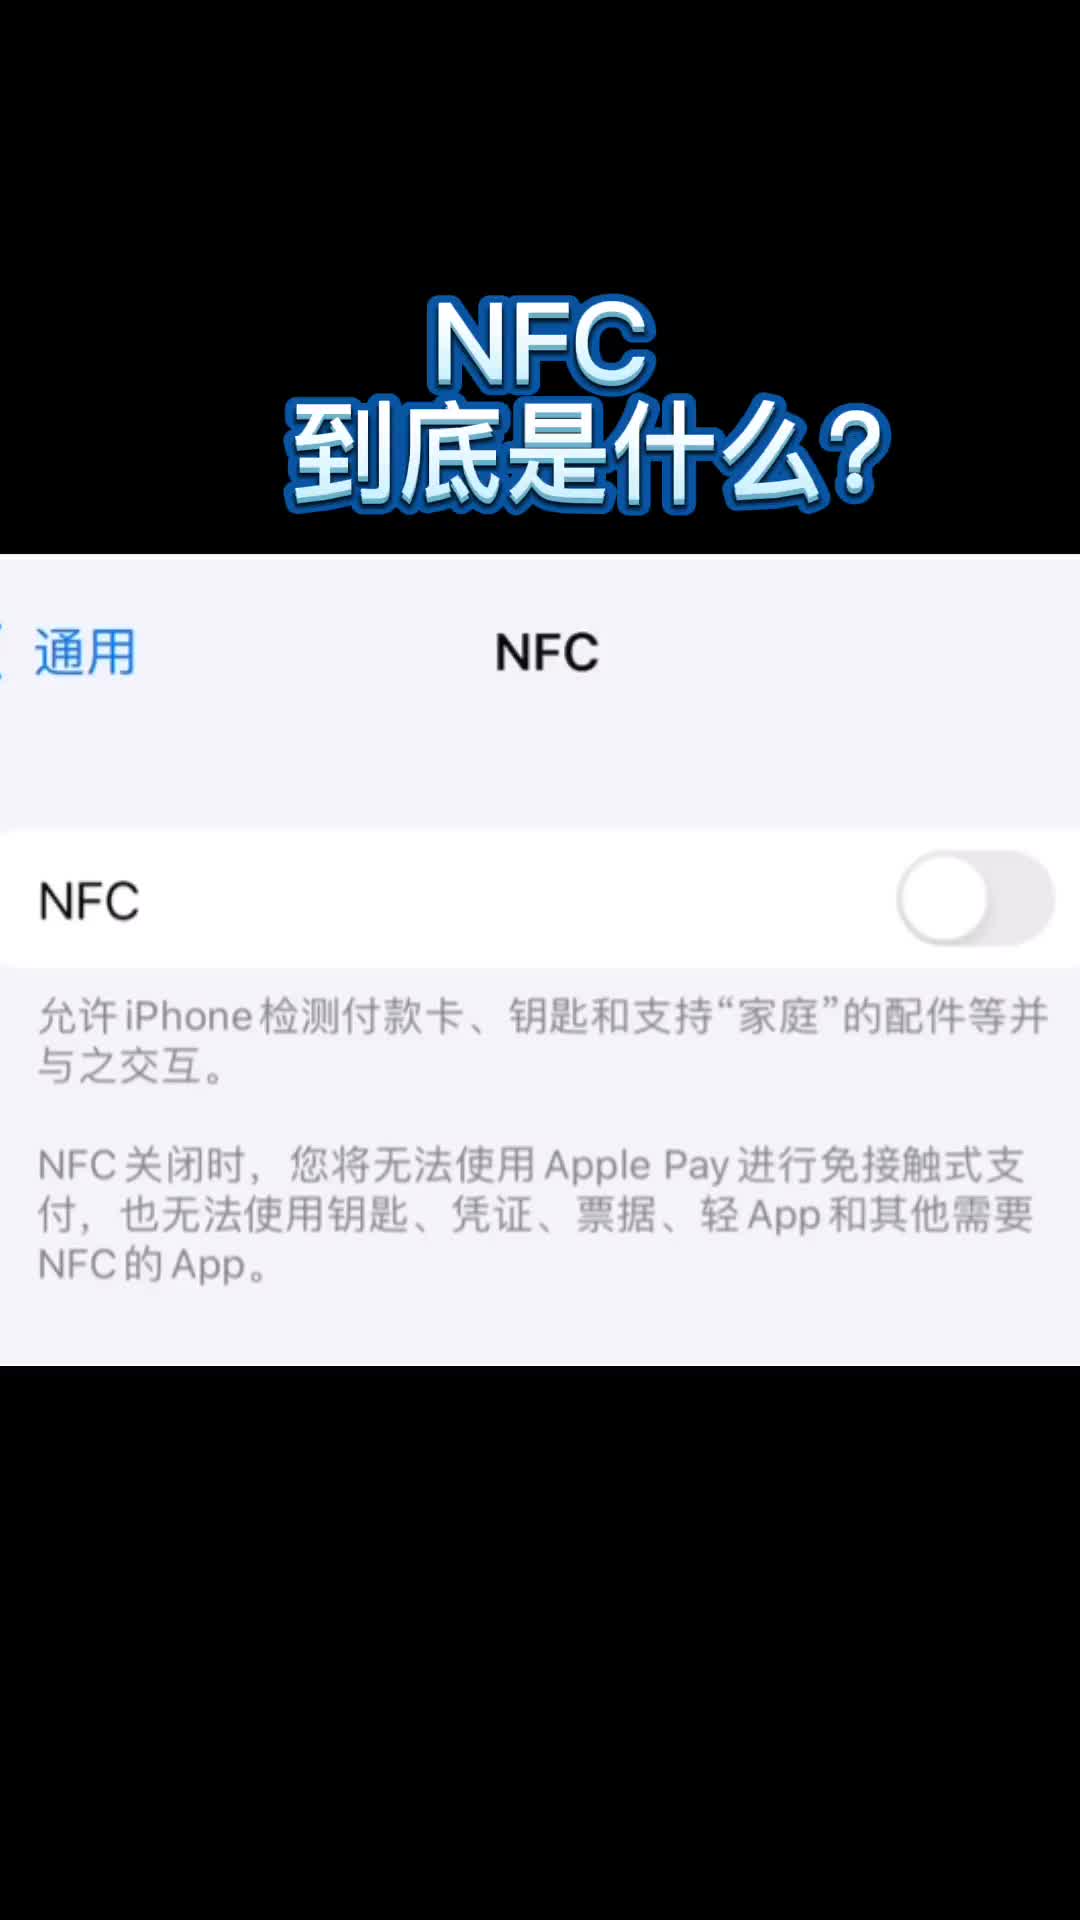 76 为什么现在的手机上都装有NFC，NFC到底是什么？为什么现在的手机上都装有NFC，NFC到底是什么？